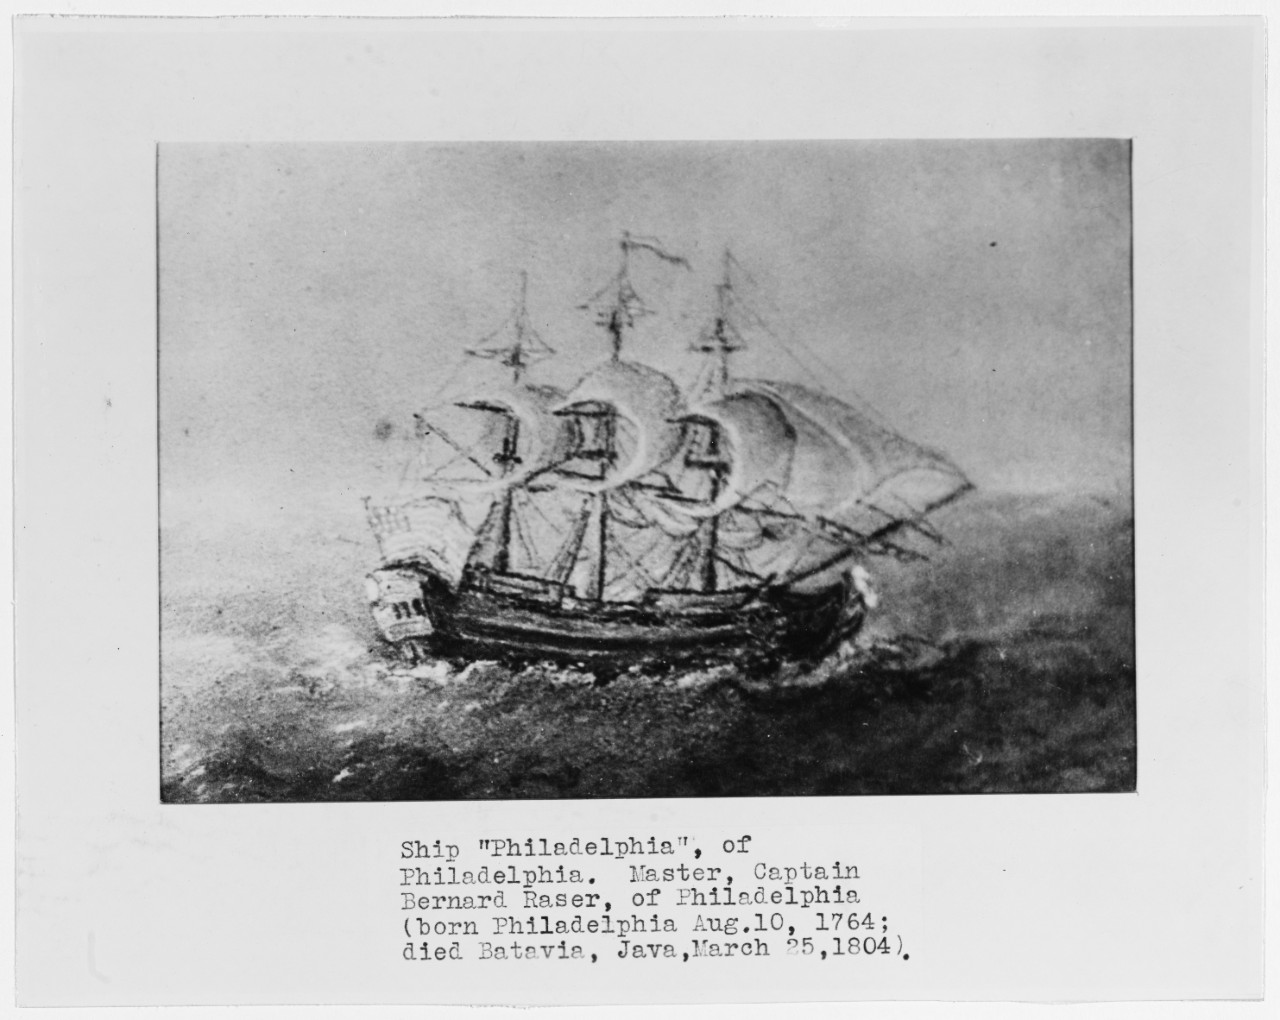 Ship PHILADELPHIA of Philadelphia, Pennsylvania.